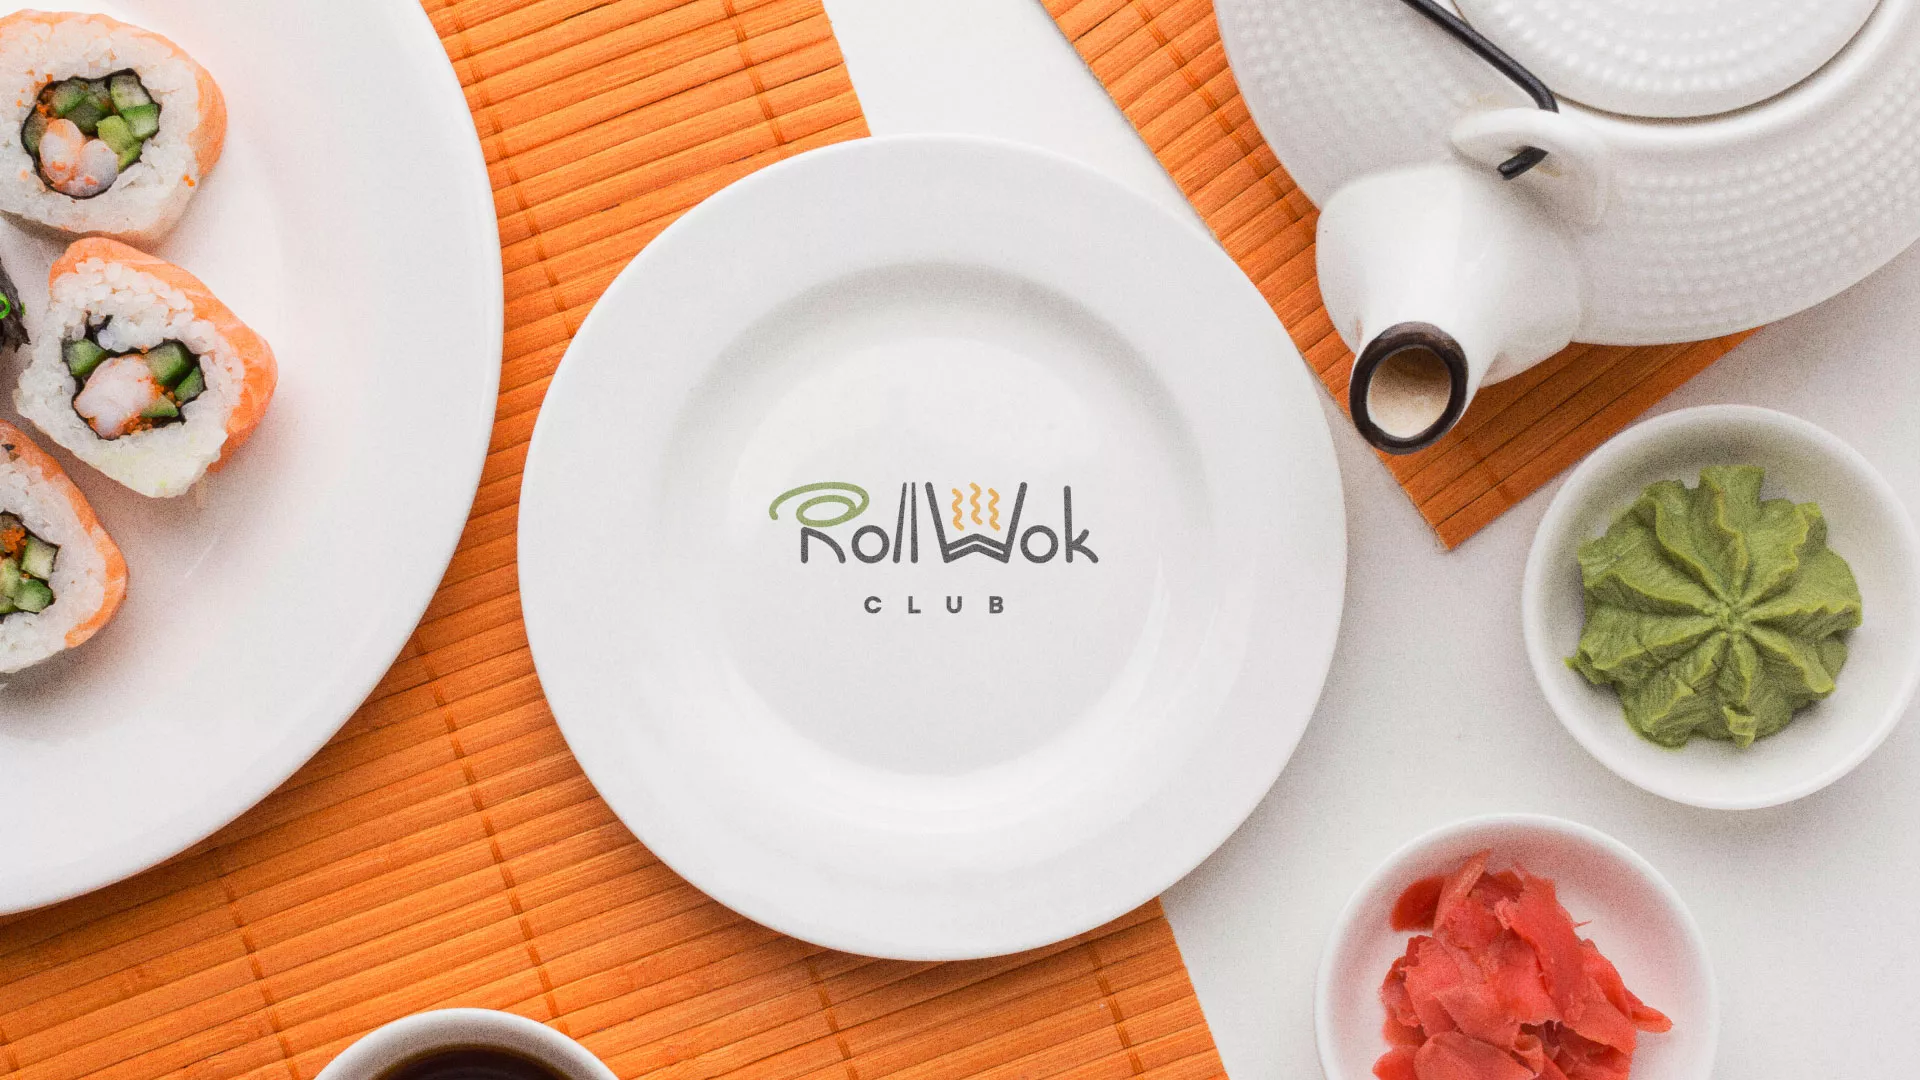 Разработка логотипа и фирменного стиля суши-бара «Roll Wok Club» в Красном Сулине